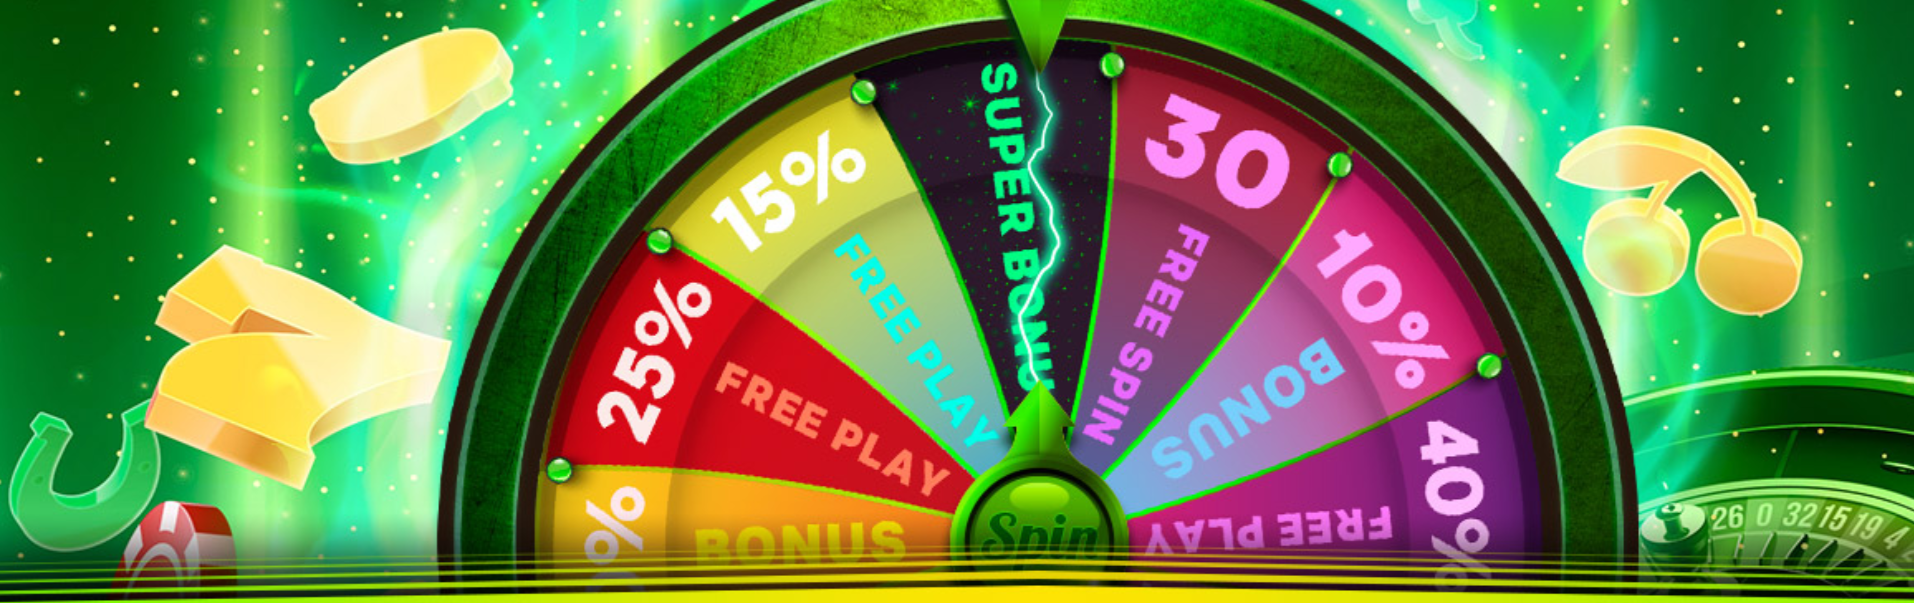 888 laimės ratas wheel of luck free spins nemokami sukimai kazino premija